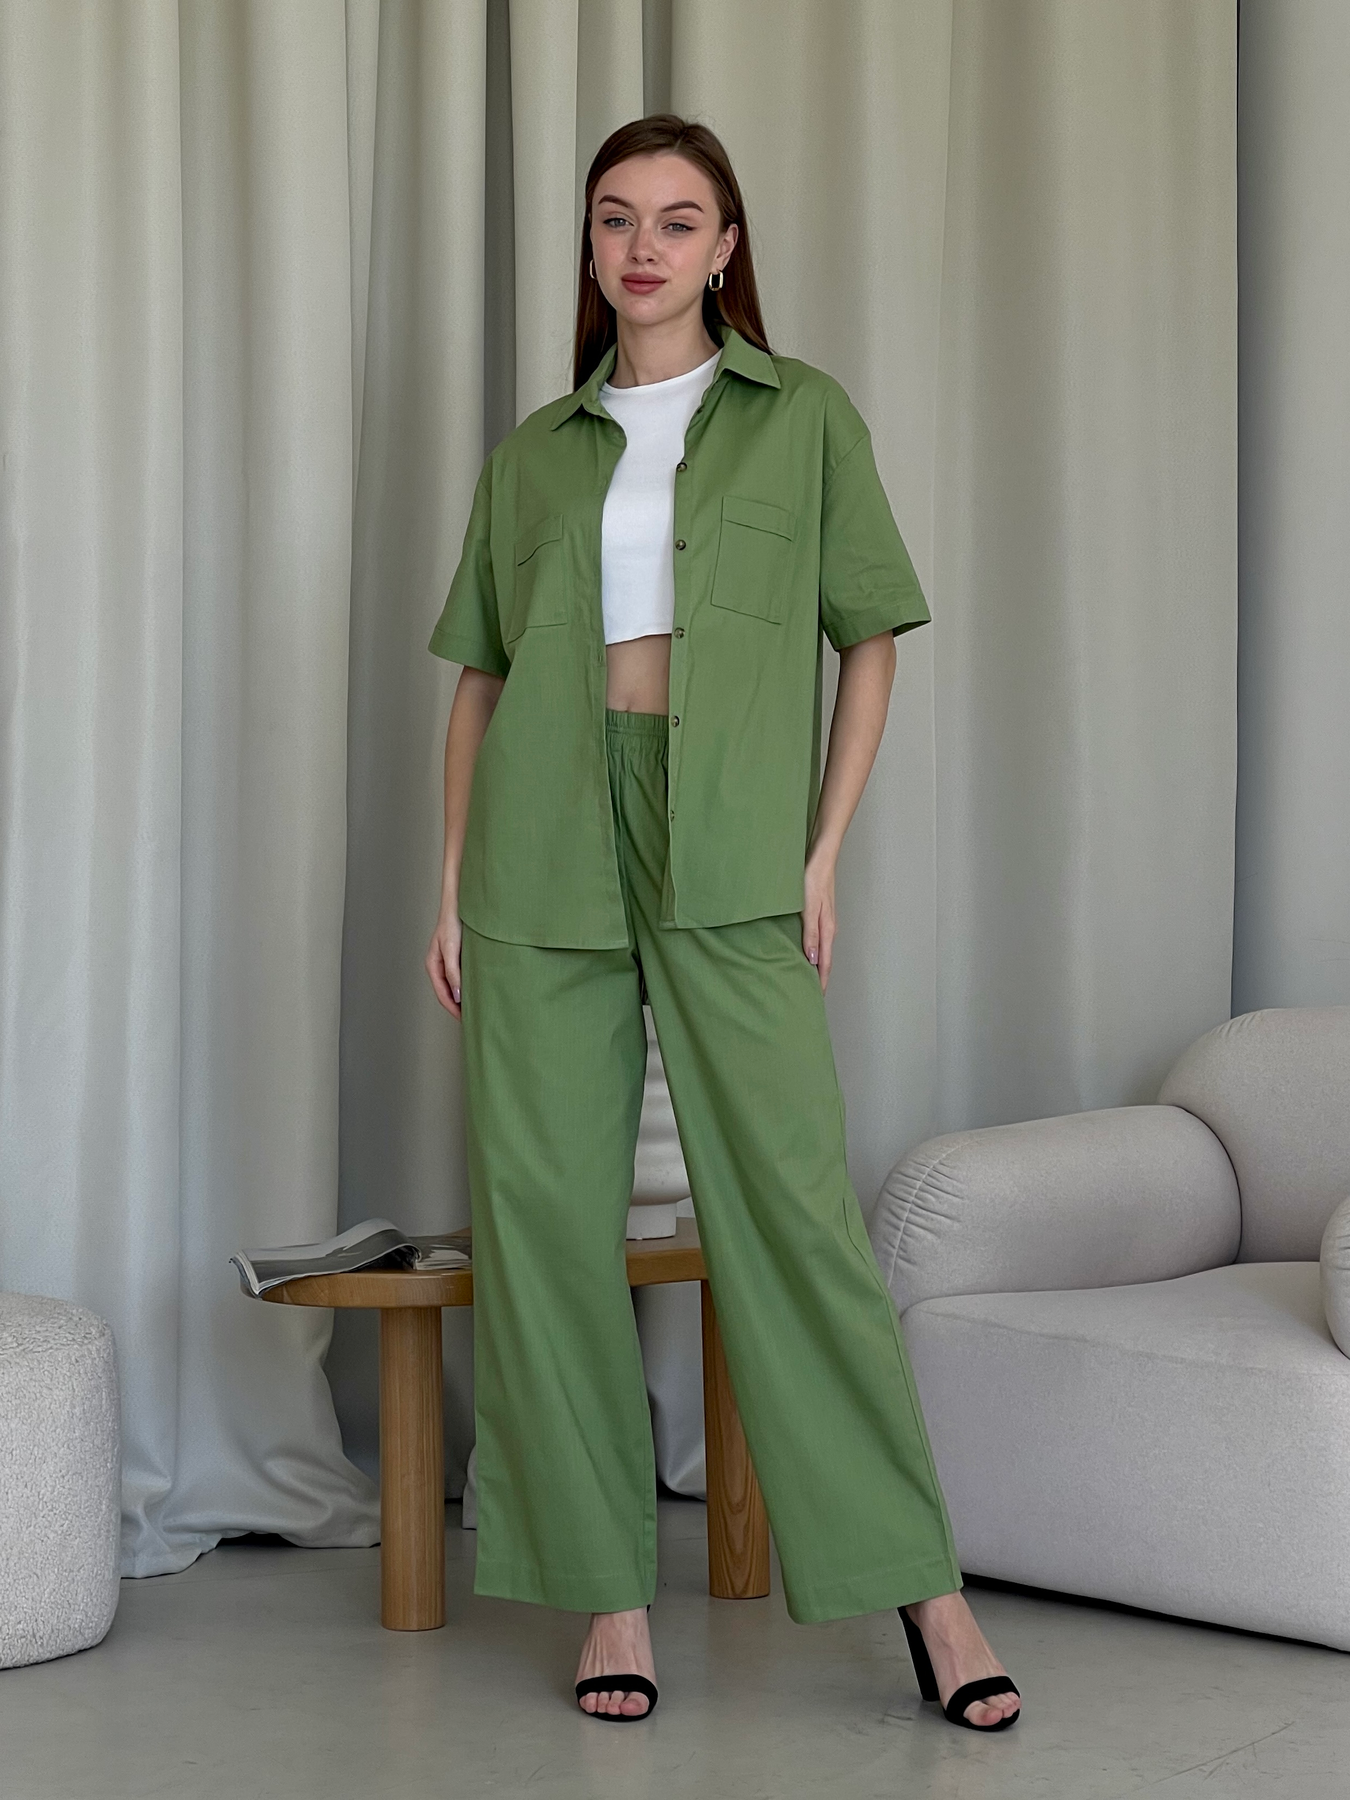 Купить Льняной костюм с штанами палаццо и рубашкой зеленый Лорен 100001205 размер 42-44 (S-M) в интернет-магазине